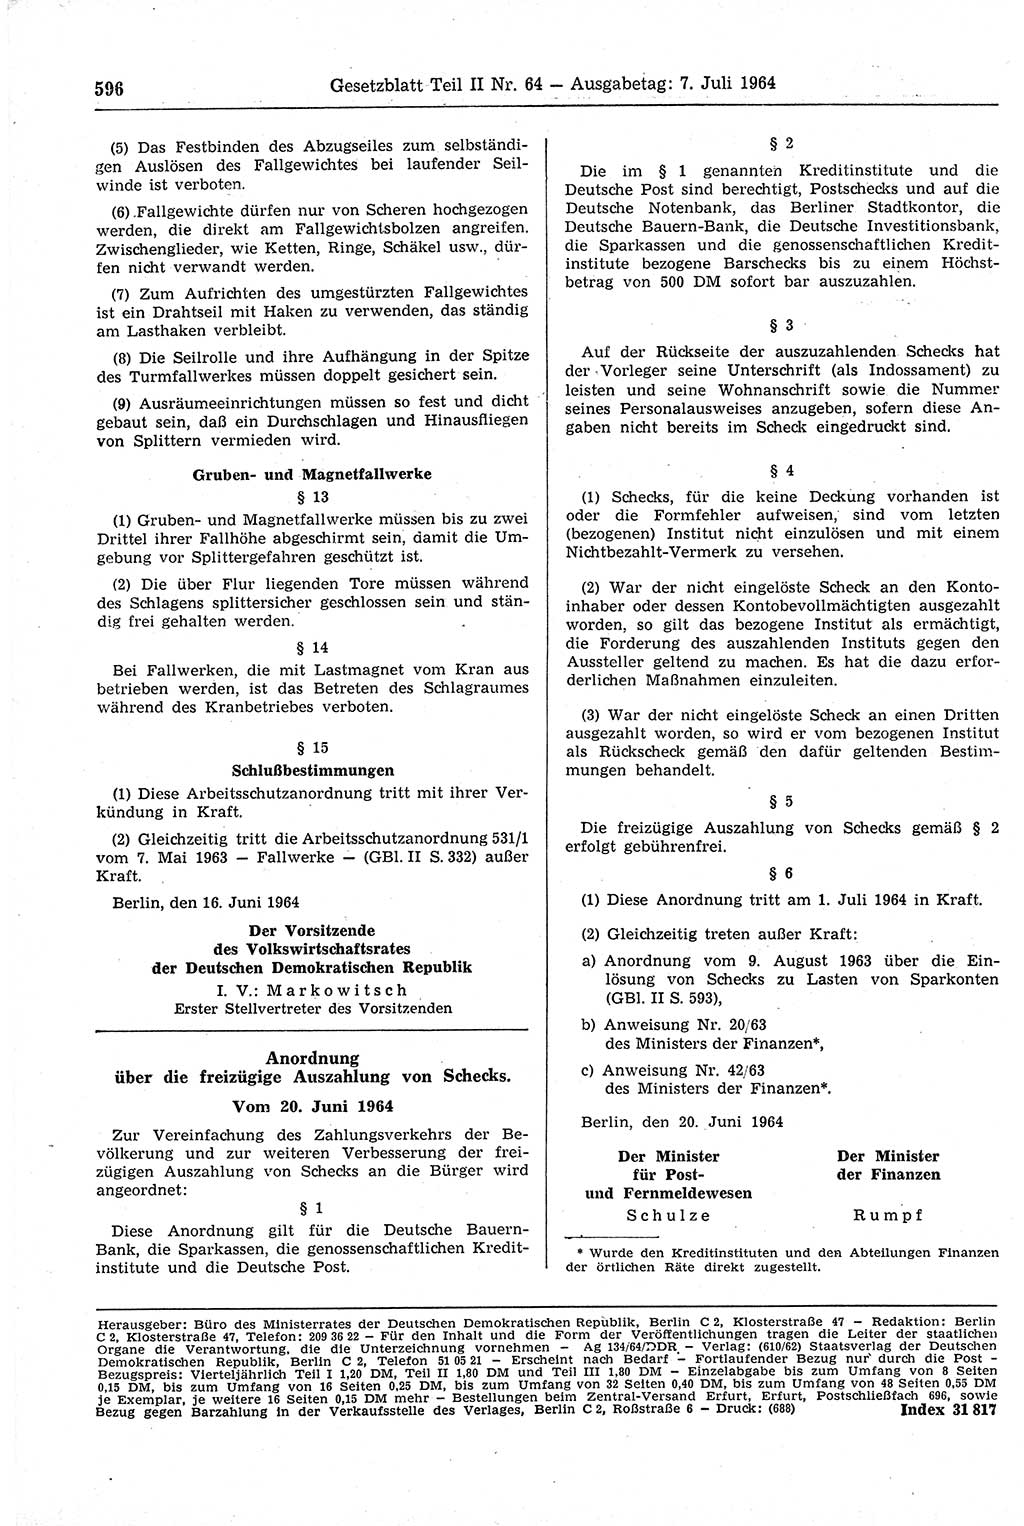 Gesetzblatt (GBl.) der Deutschen Demokratischen Republik (DDR) Teil ⅠⅠ 1964, Seite 596 (GBl. DDR ⅠⅠ 1964, S. 596)